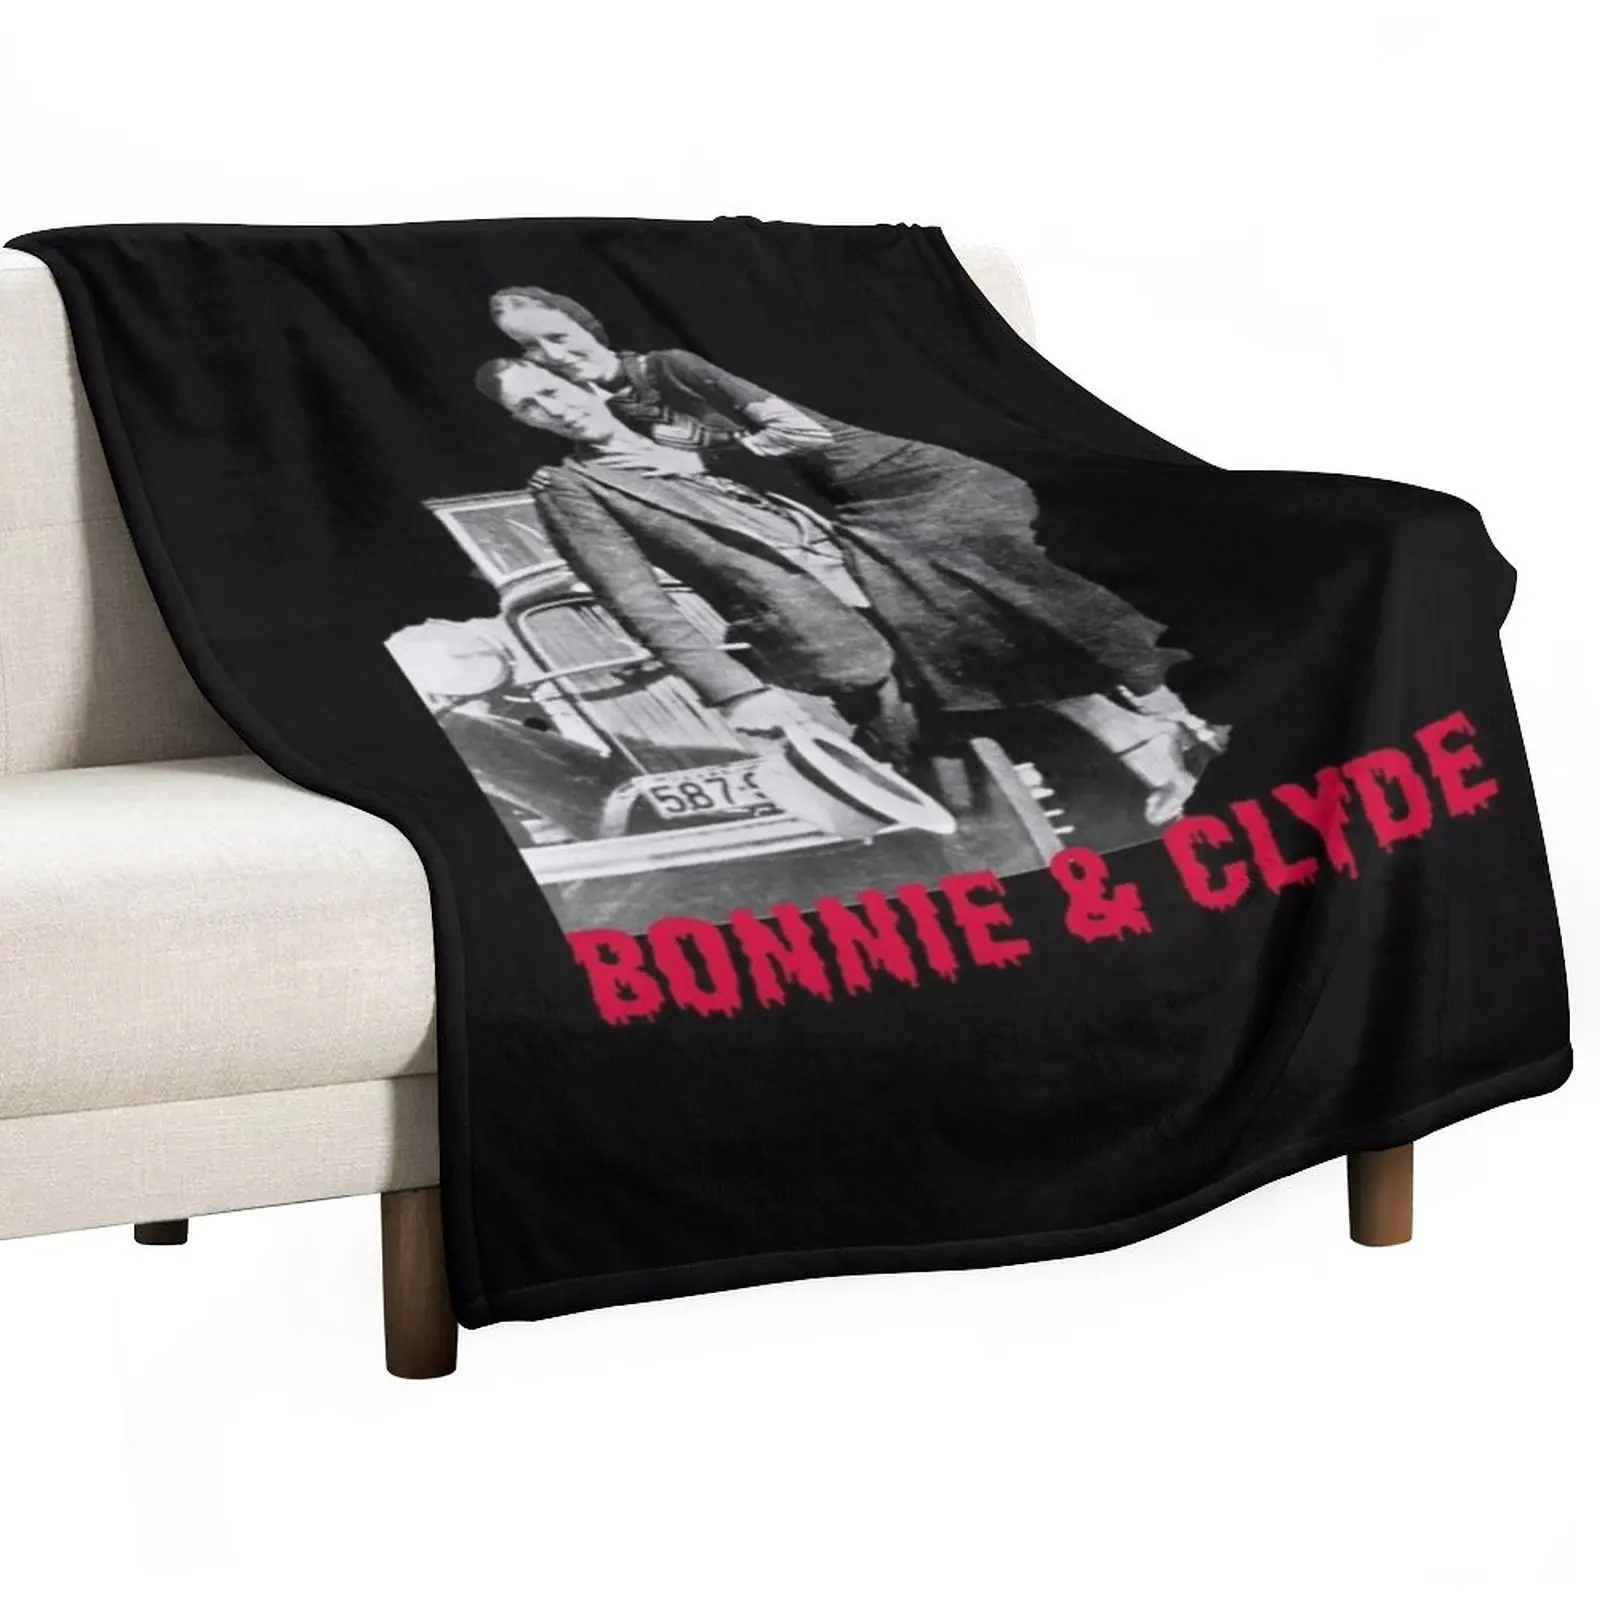 

Одеяло Bonnie & clyde от pandemic2020, пушистые одеяла, постельное белье, красивые одеяла